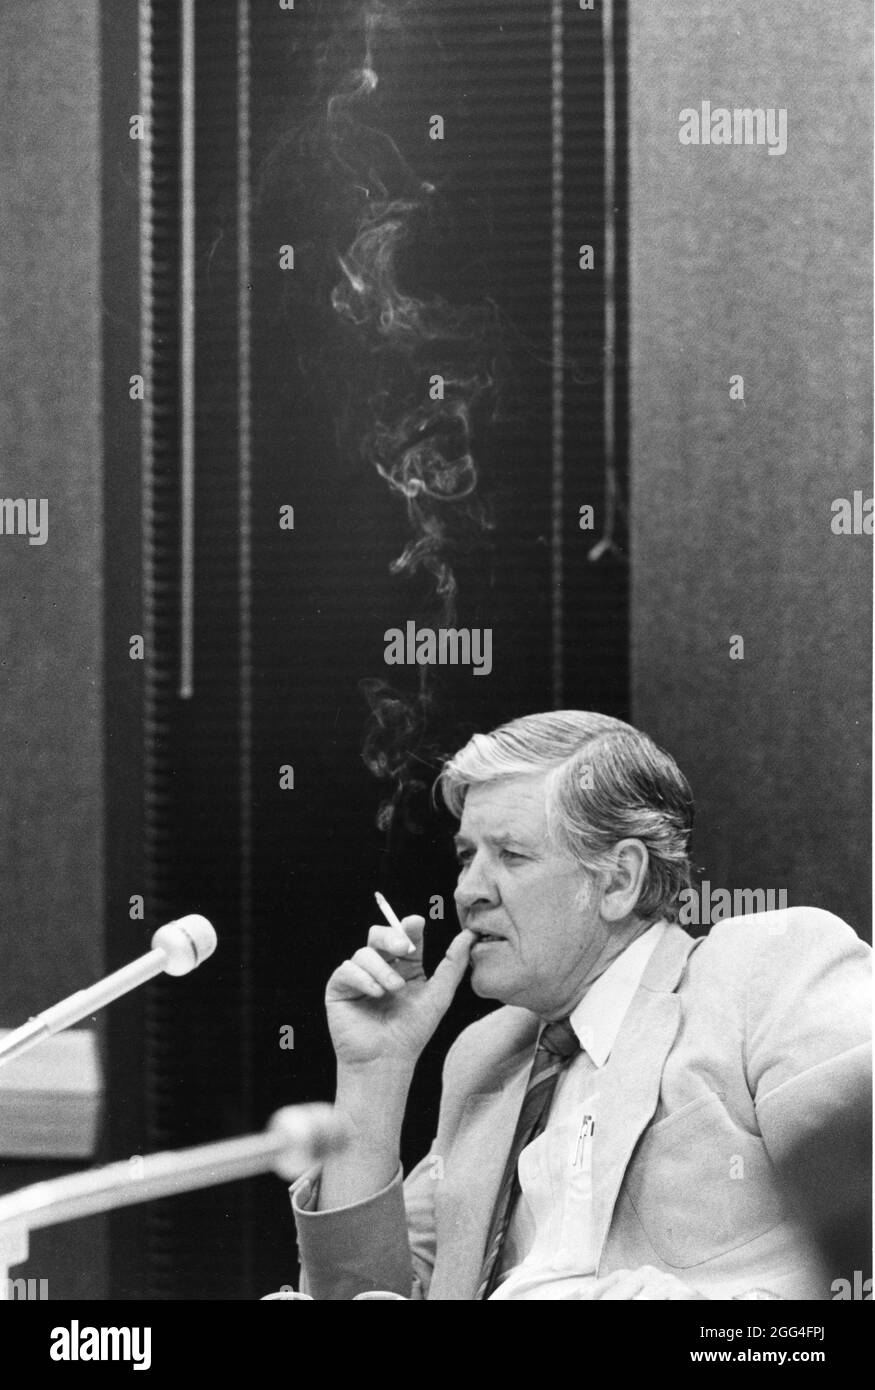 Austin Texas USA, vers 1989: Un législateur d'État de sexe masculin fume une cigarette à l'audience du comité. ©Bob Daemmrich Banque D'Images